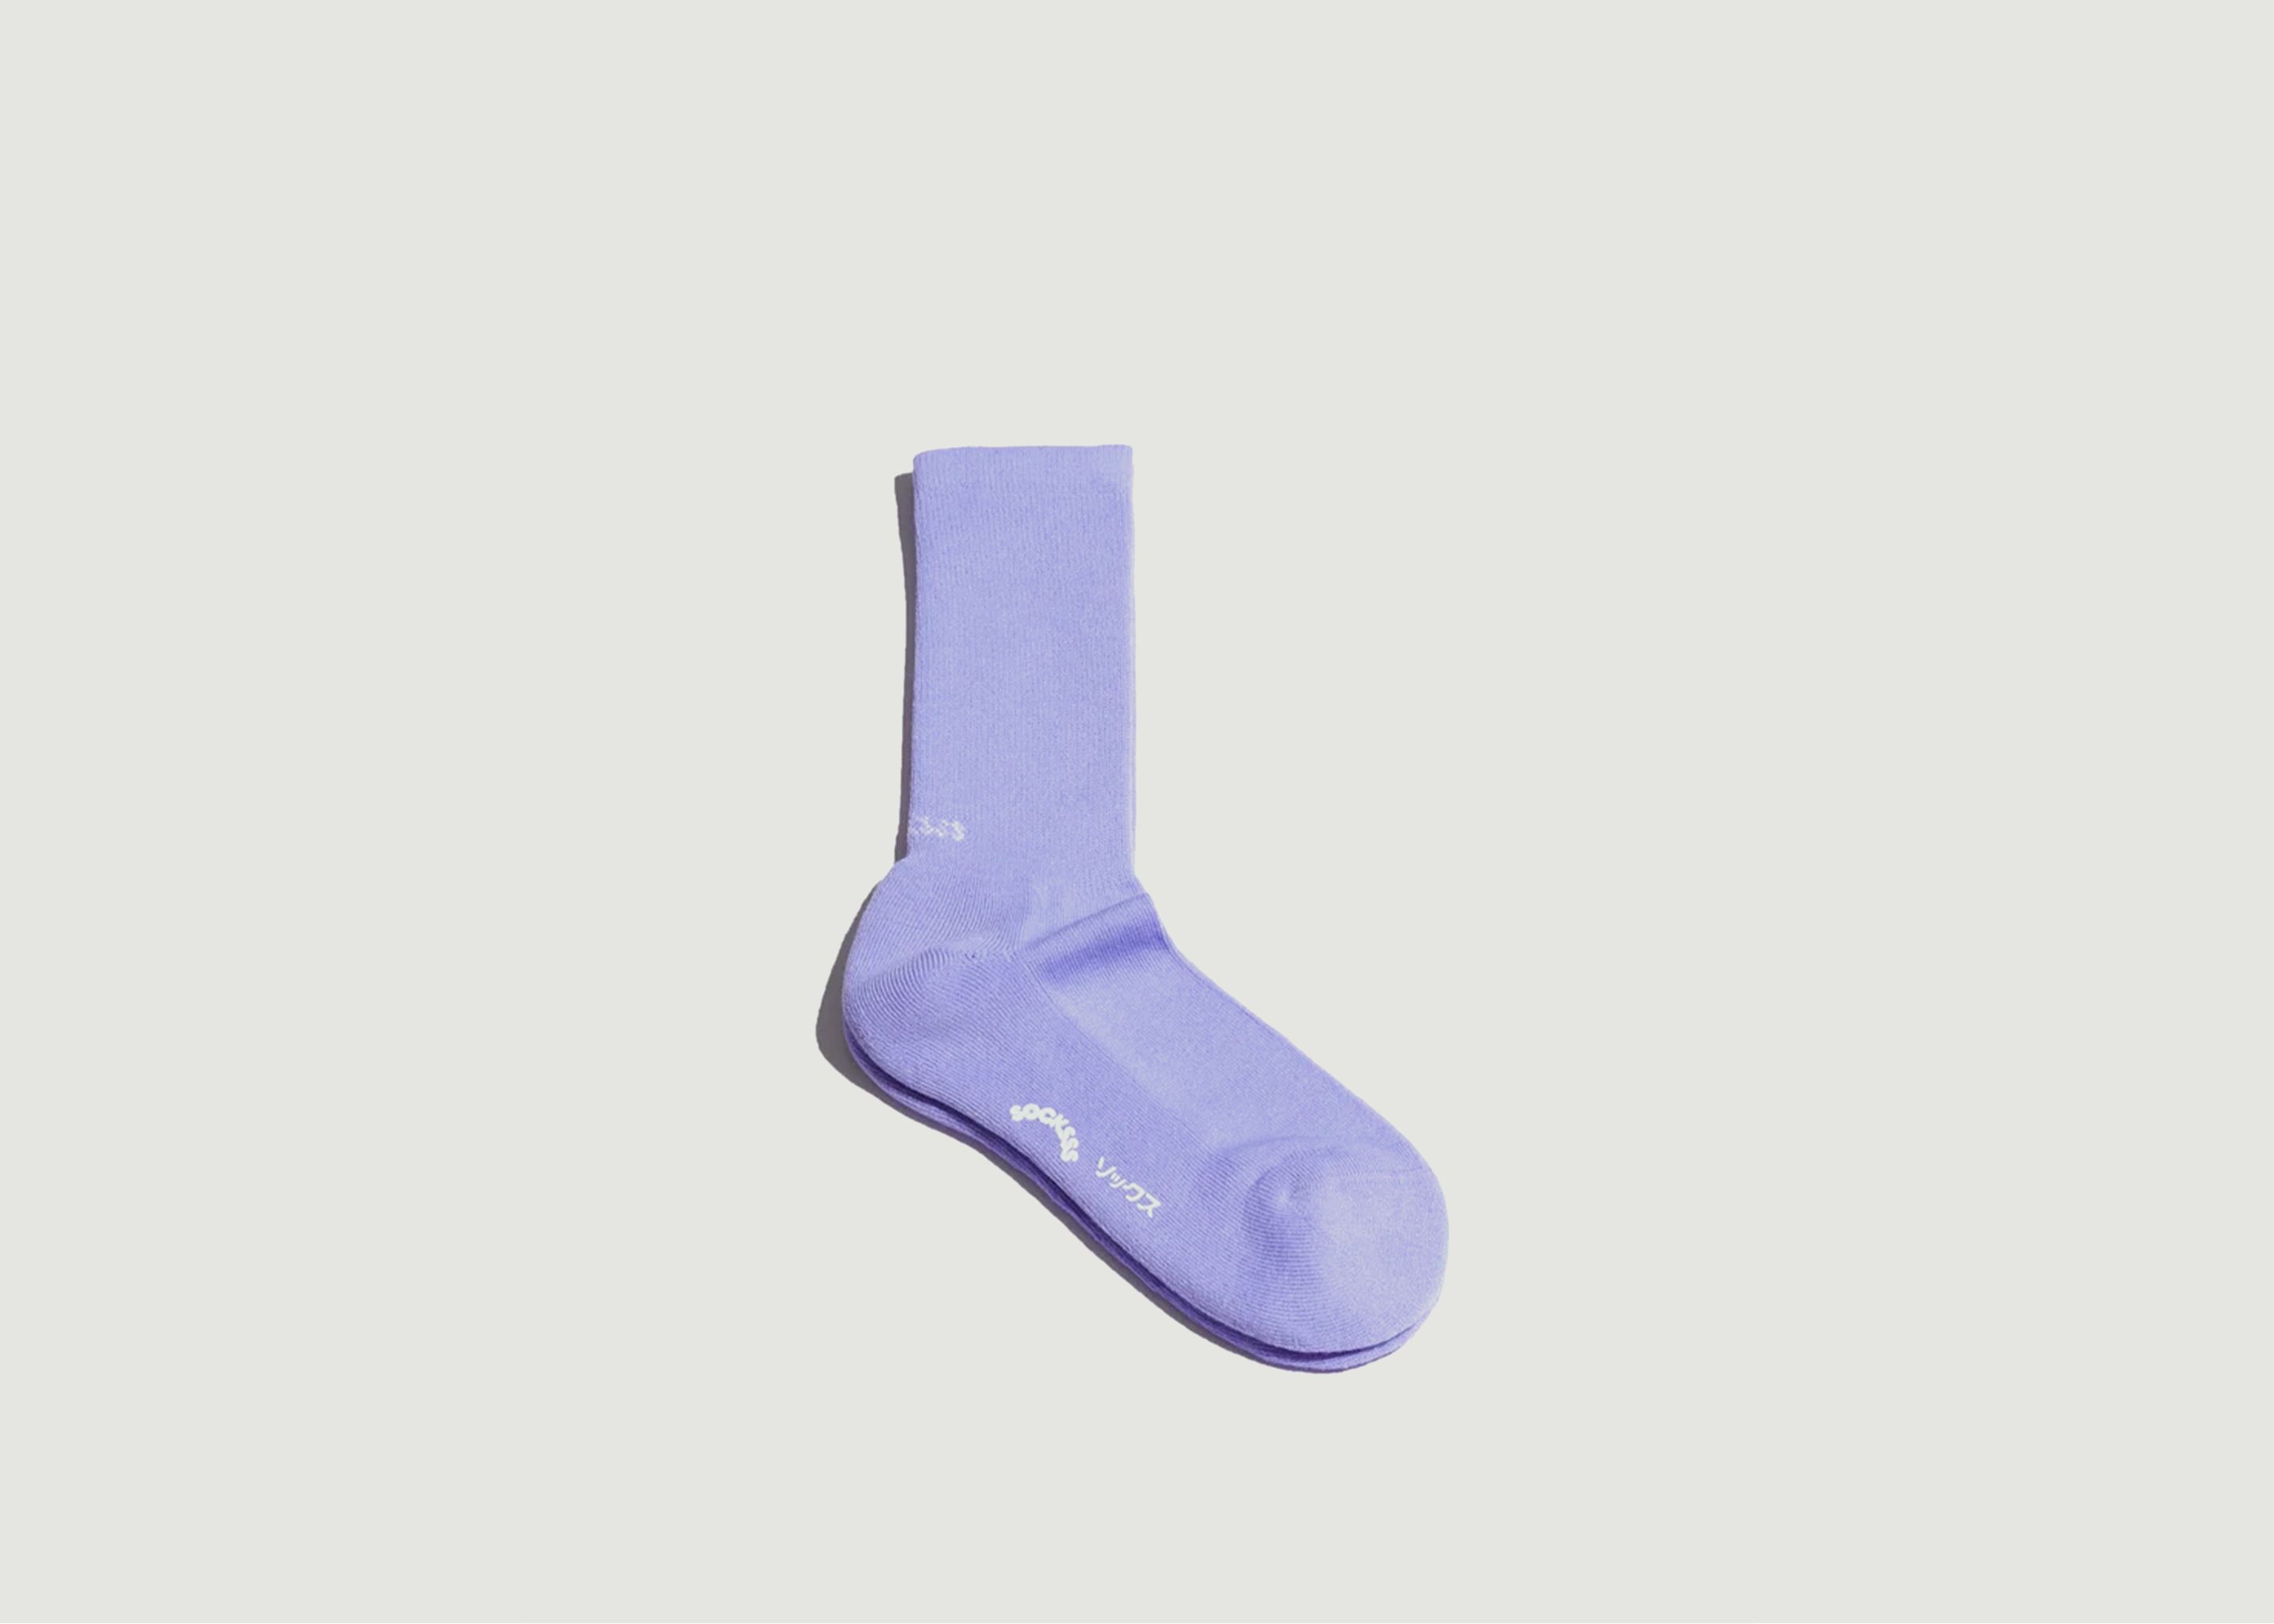 Its Not Blue Organic Cotton Socks - Socksss